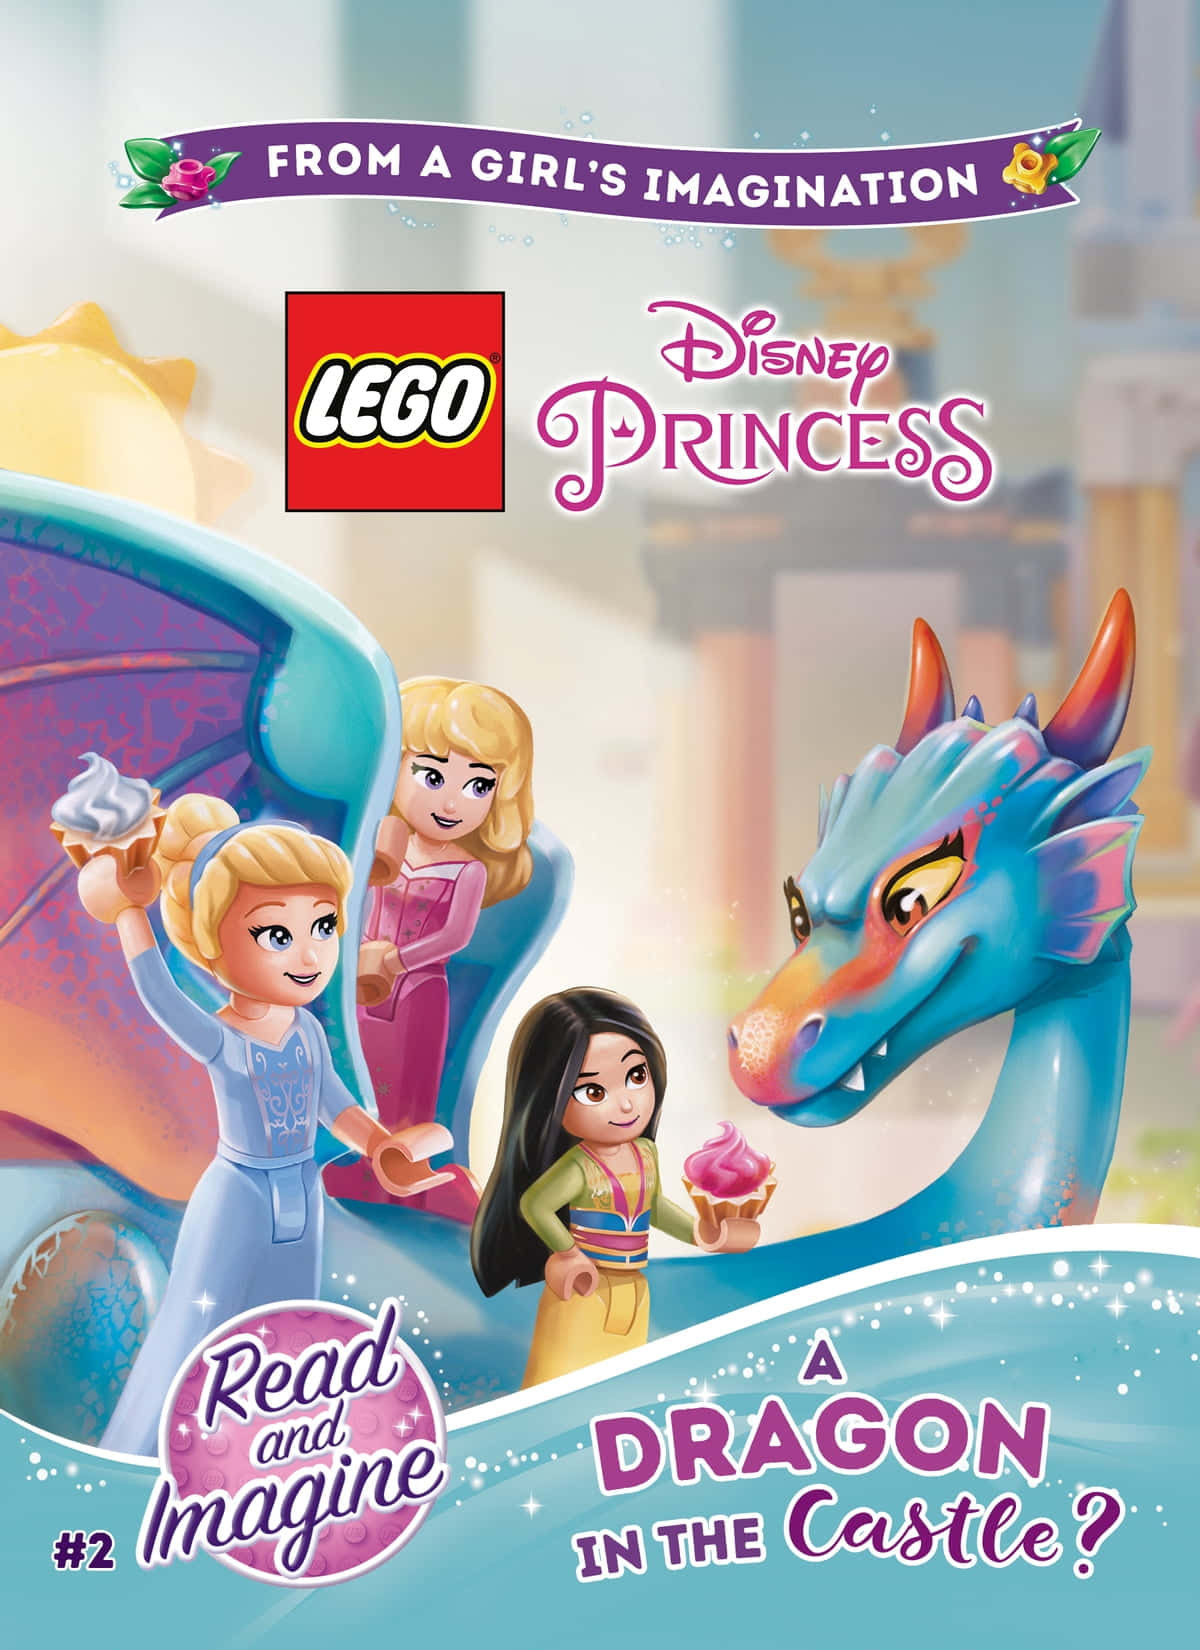 Billeder af Disney Prinsesser pryder barnets bærbare computers baggrund.